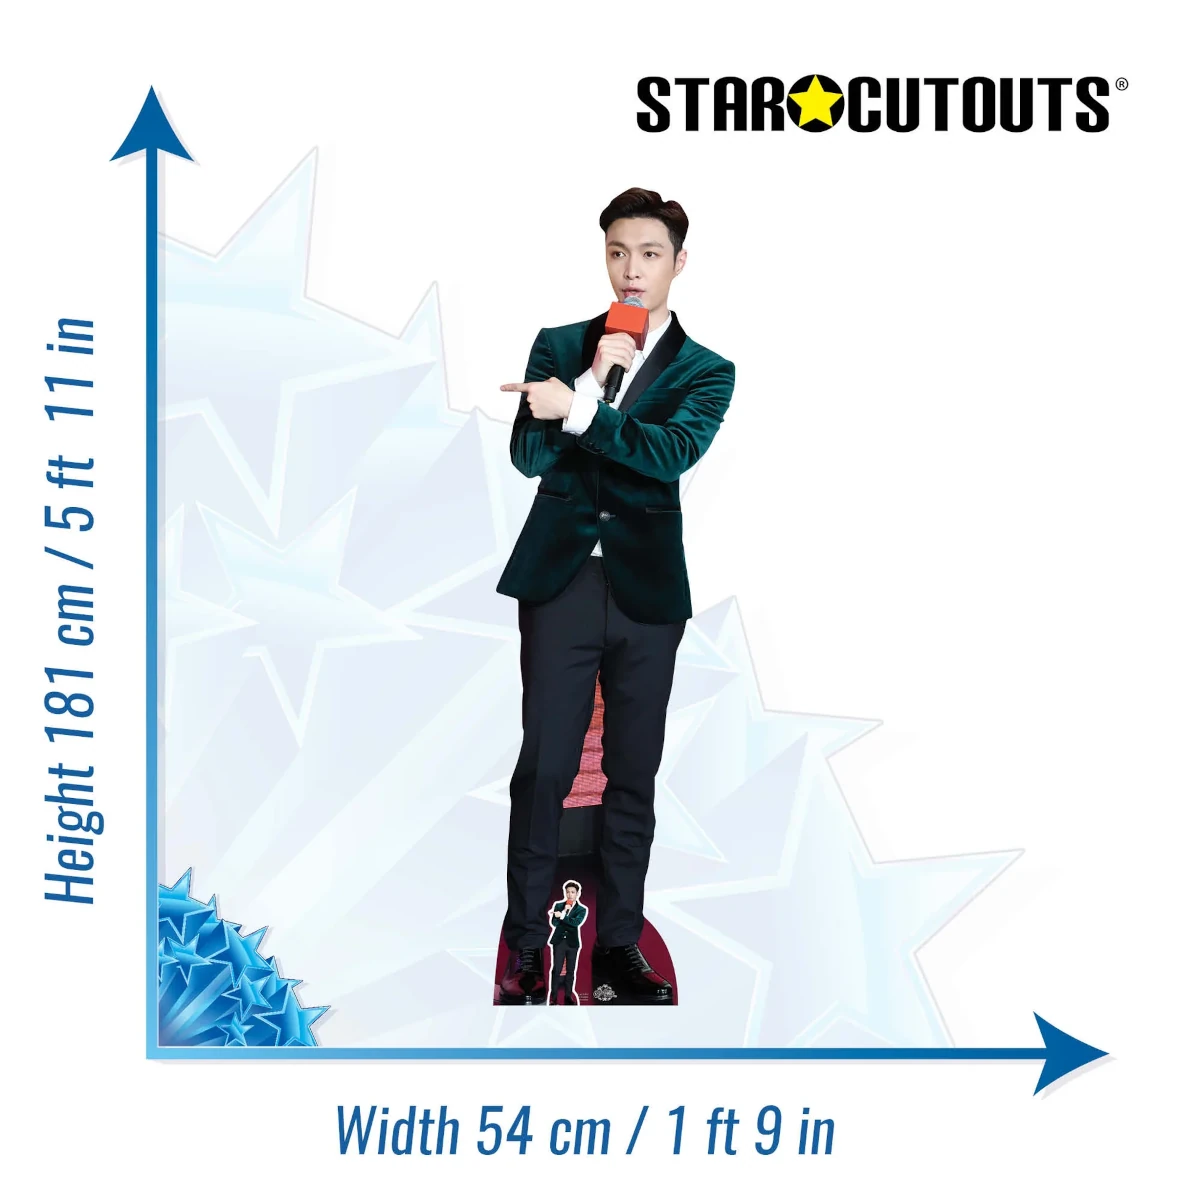 CS777 Lay Zhang 'Exo' (Chinese Rapper) Lifesize + Mini Cardboard Cutout Standee Size